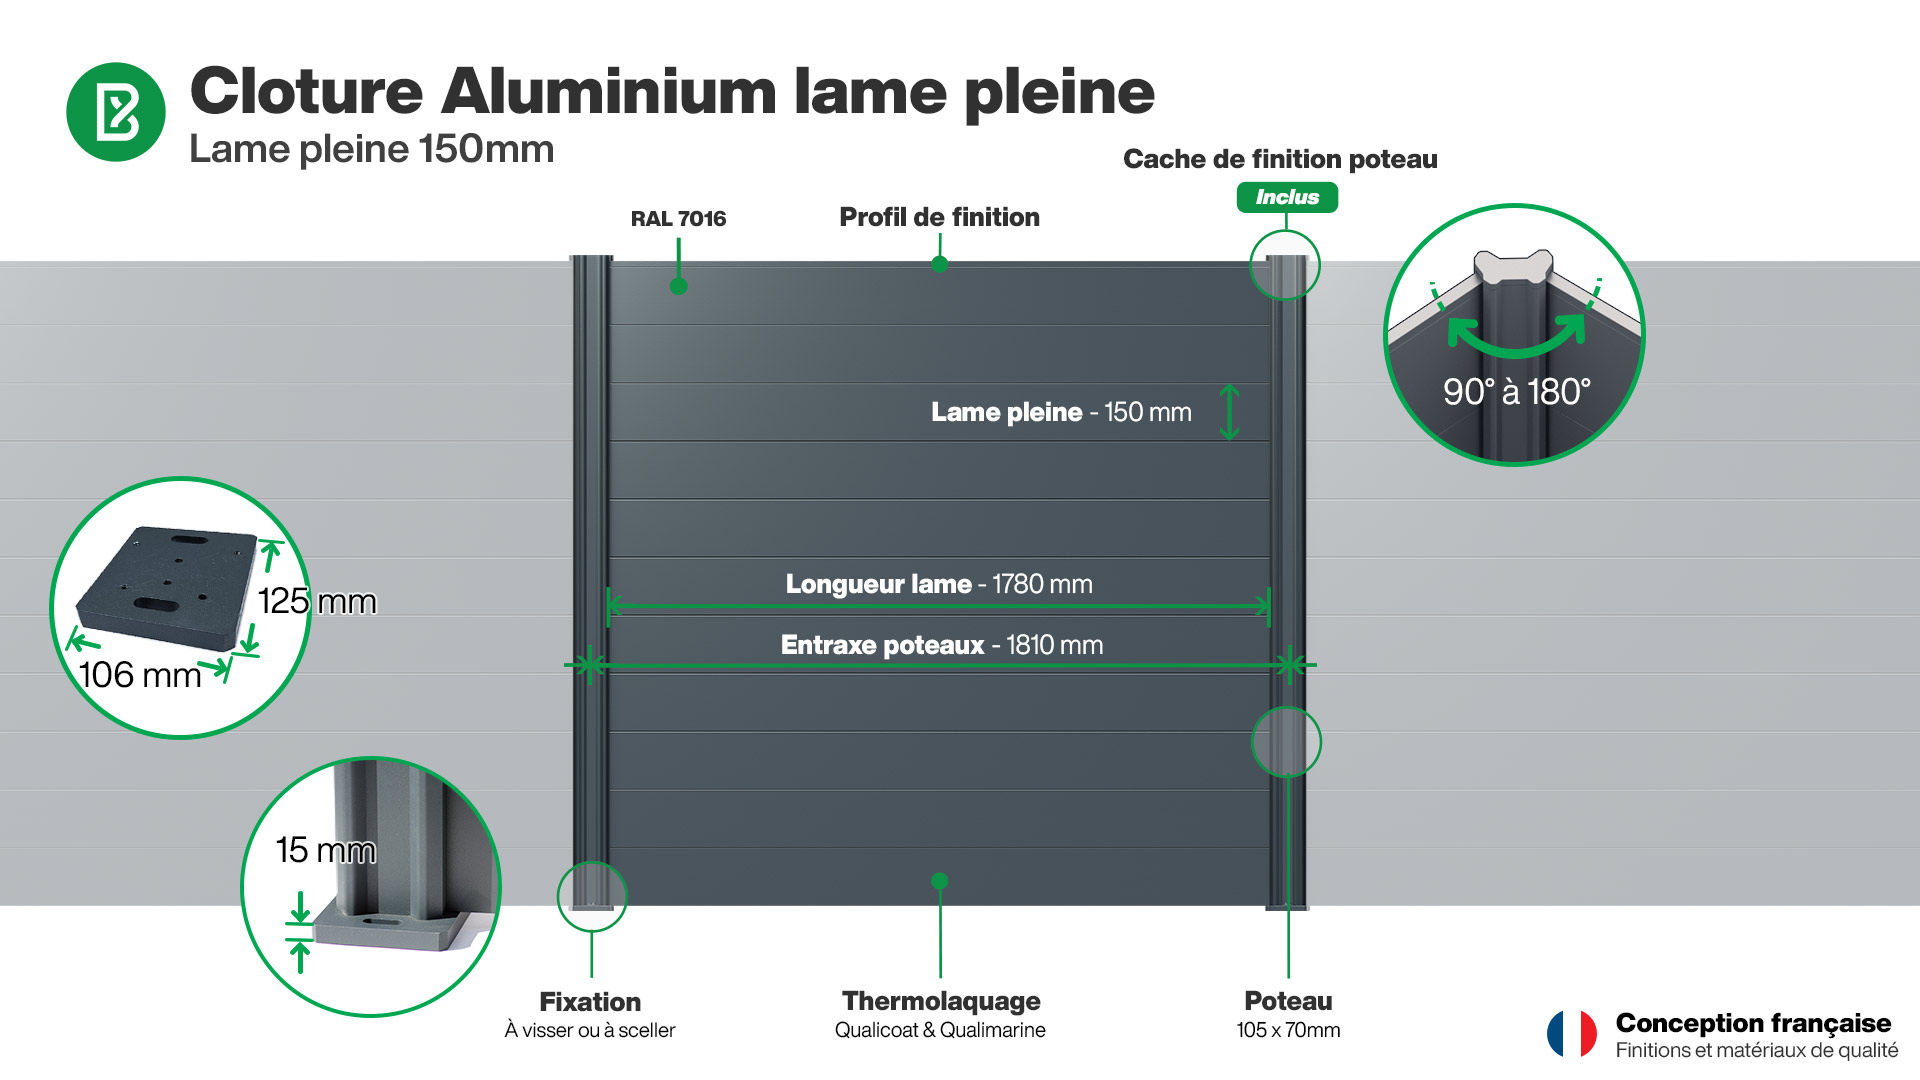 Cloture : Infographie d'une clôture aluminium pleine